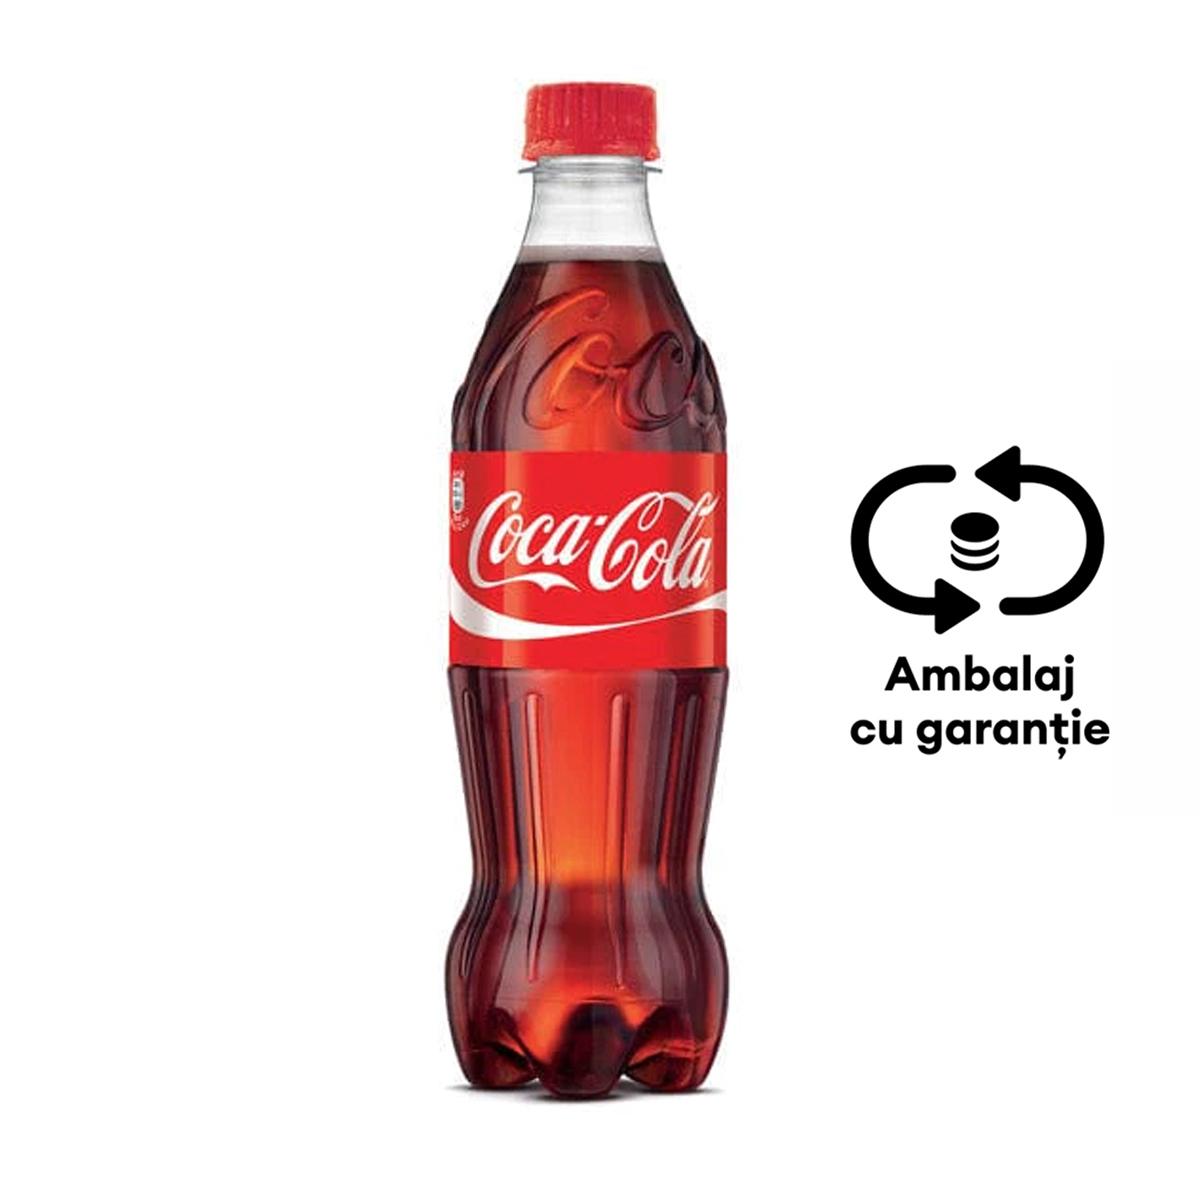 Bautura racoritoare carbogazoasa Coca-Cola, 0.5 l, 12 bucati/bax, eticheta SGR